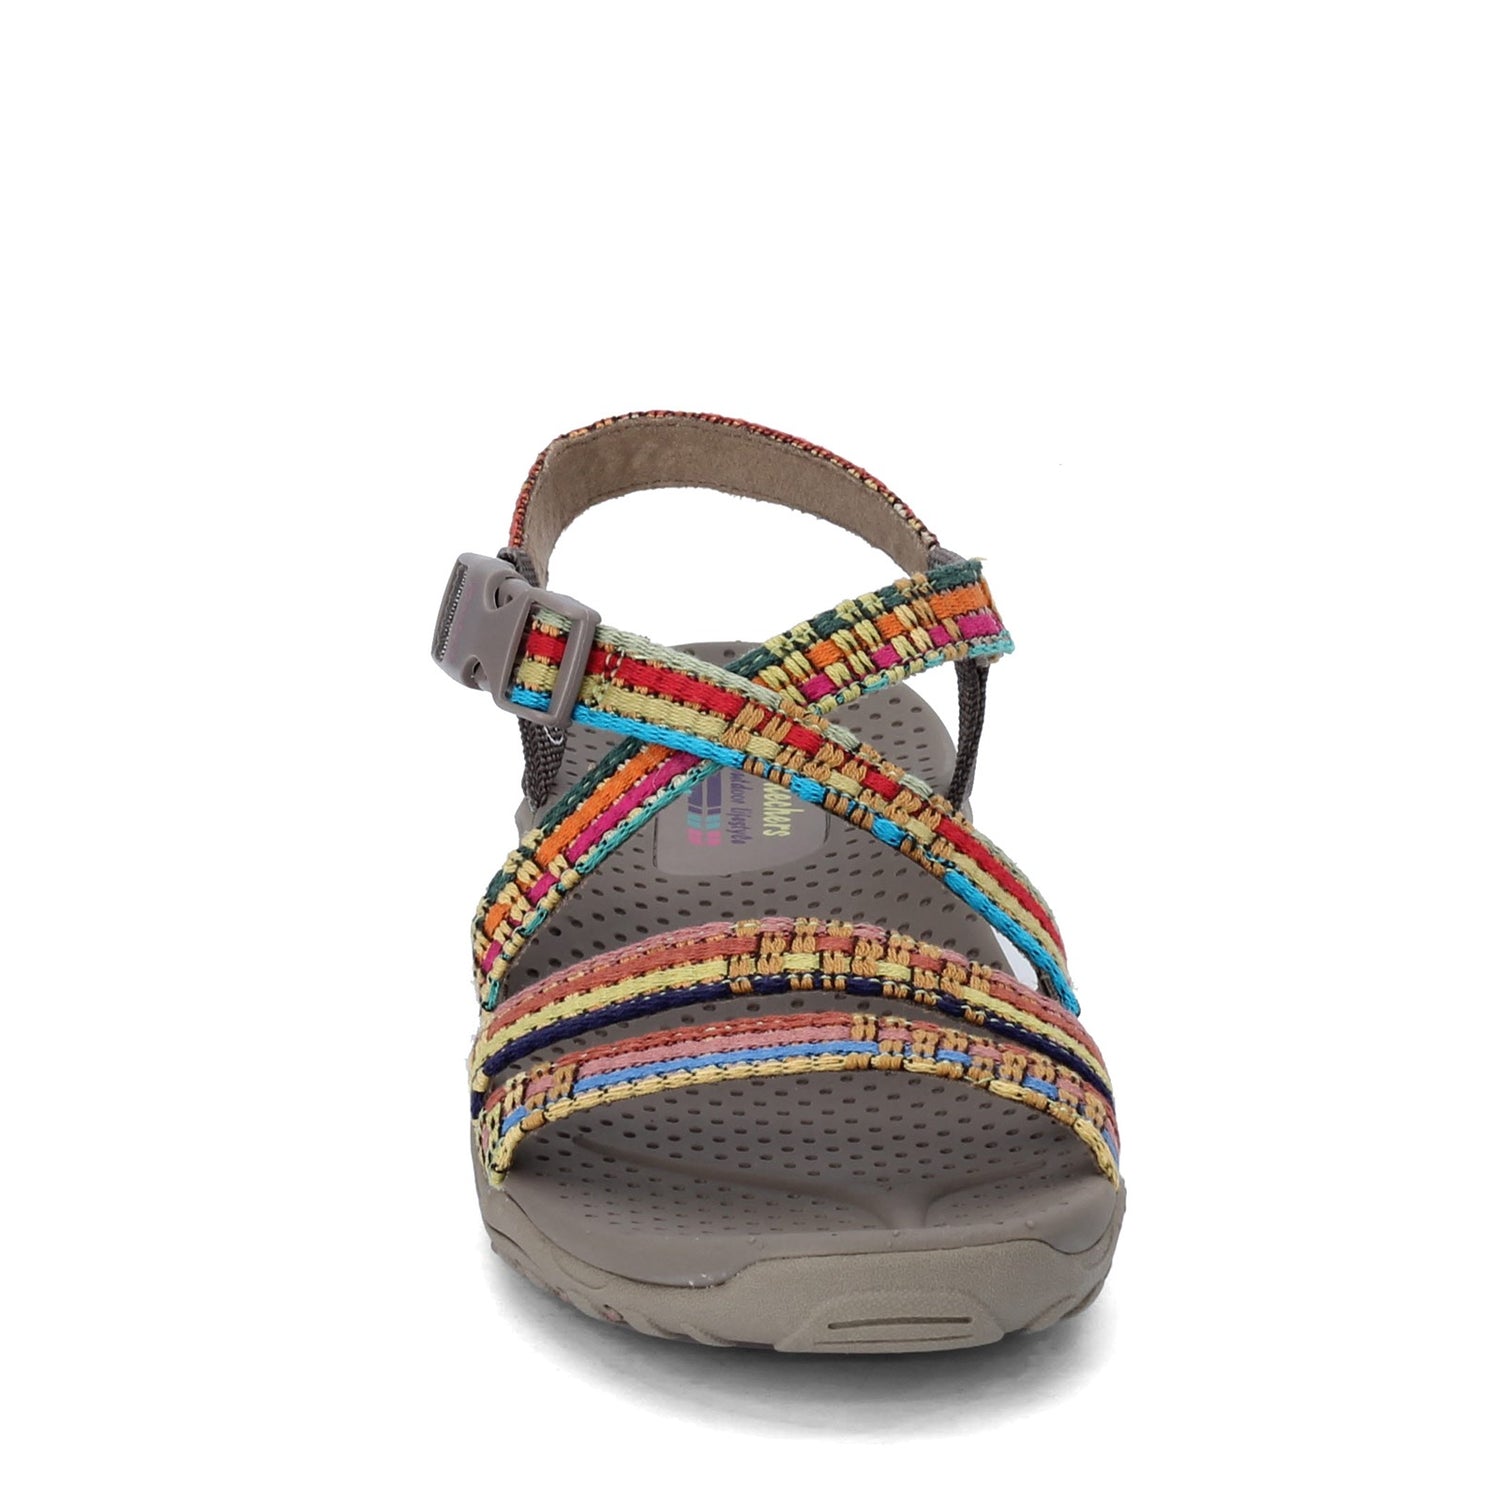 Peltz Shoes  Women's Skechers Reggae - Sew Me Sandal TAUPE MULTI 41113-TPMT